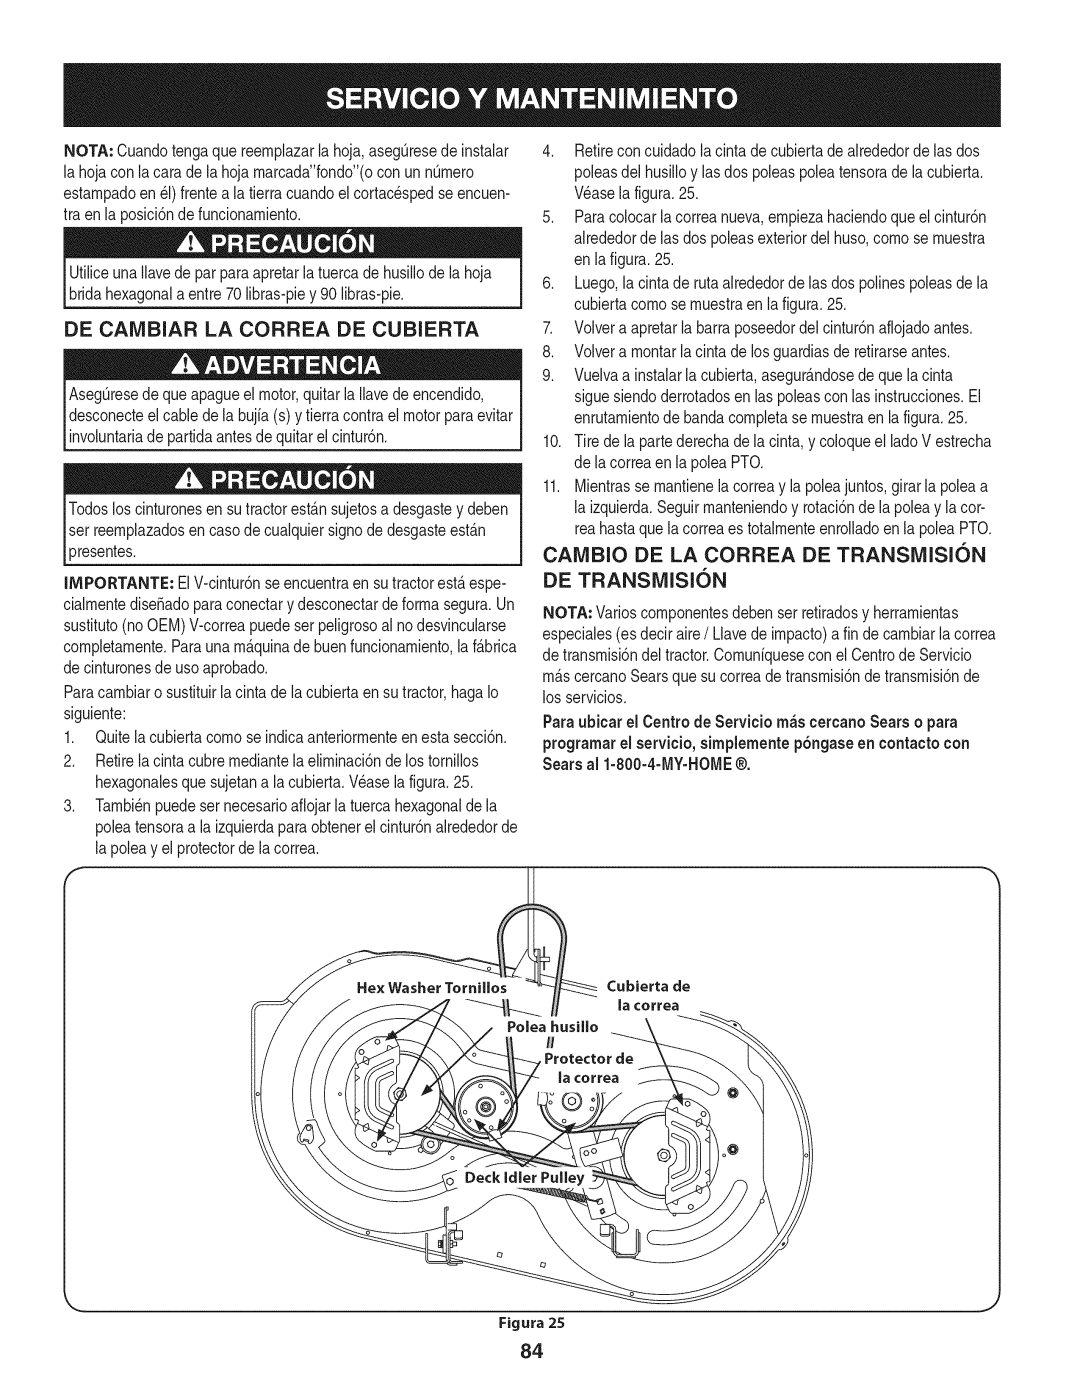 Craftsman 247.28902 manual De Caivibiar La Correa De Cubierta, Figura 